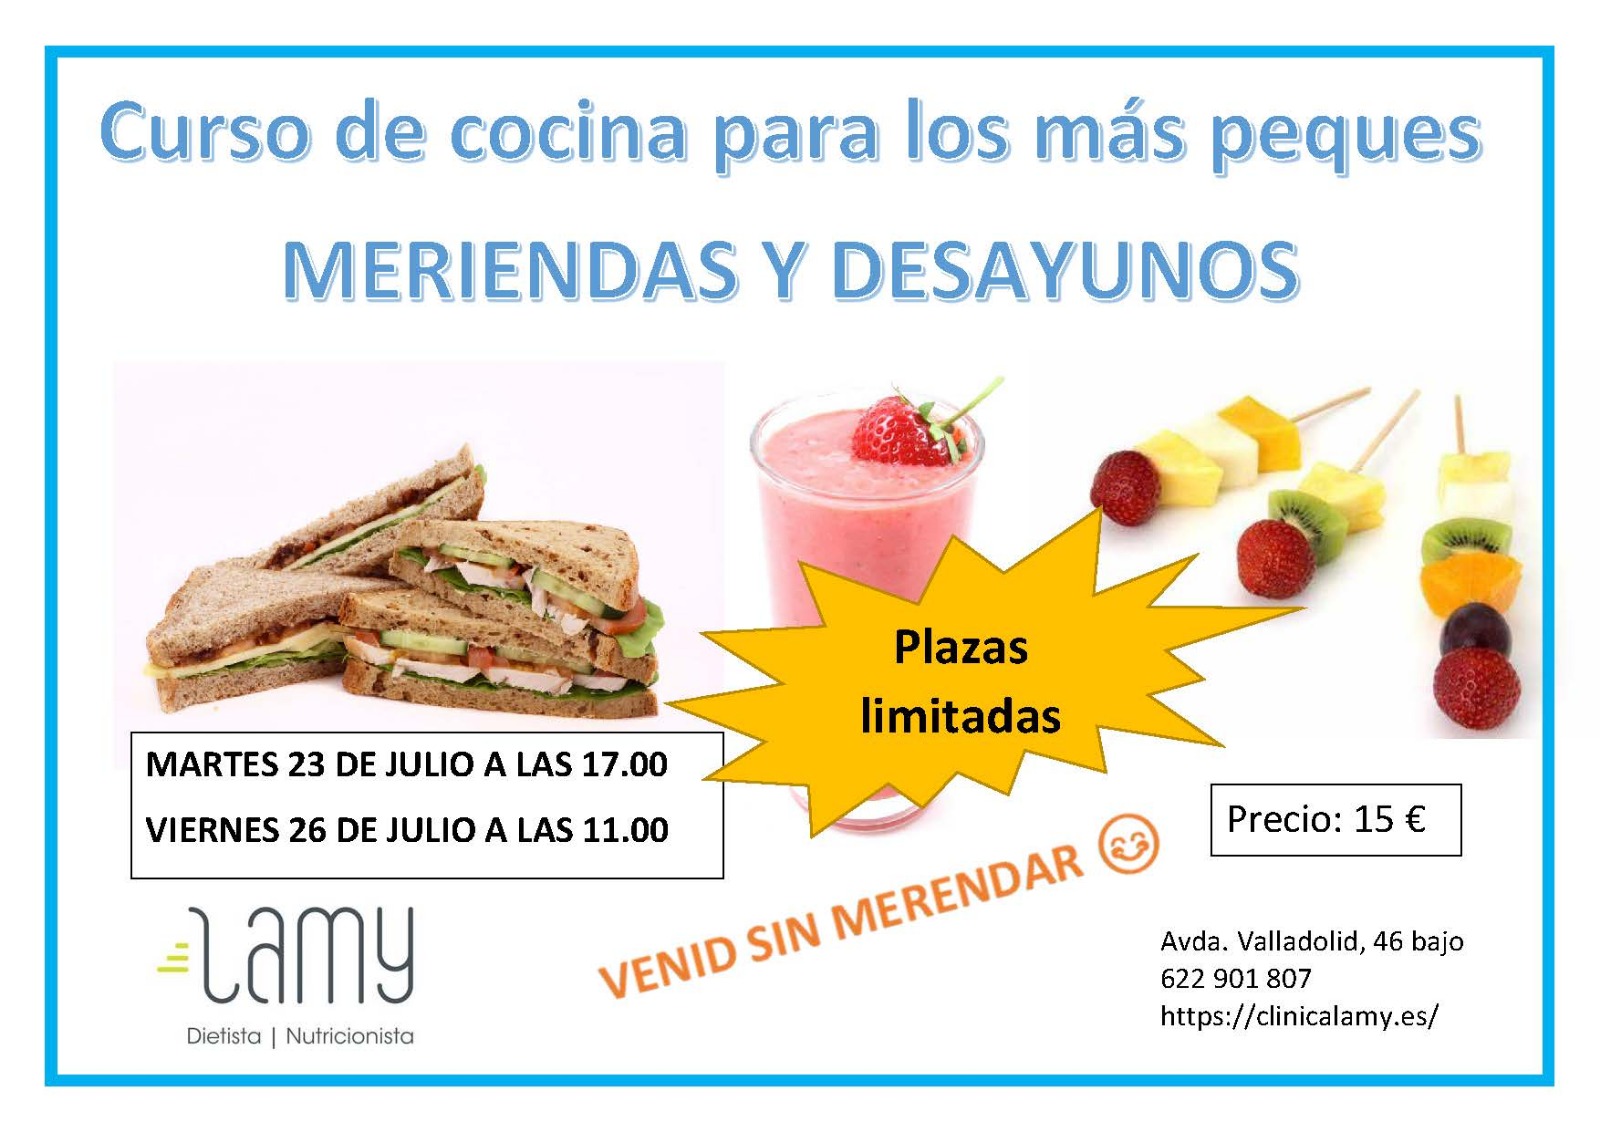 Dietista Nutricionista en Soria: Curso de cocina para los más peques. MERIENDAS Y DESAYUNOS